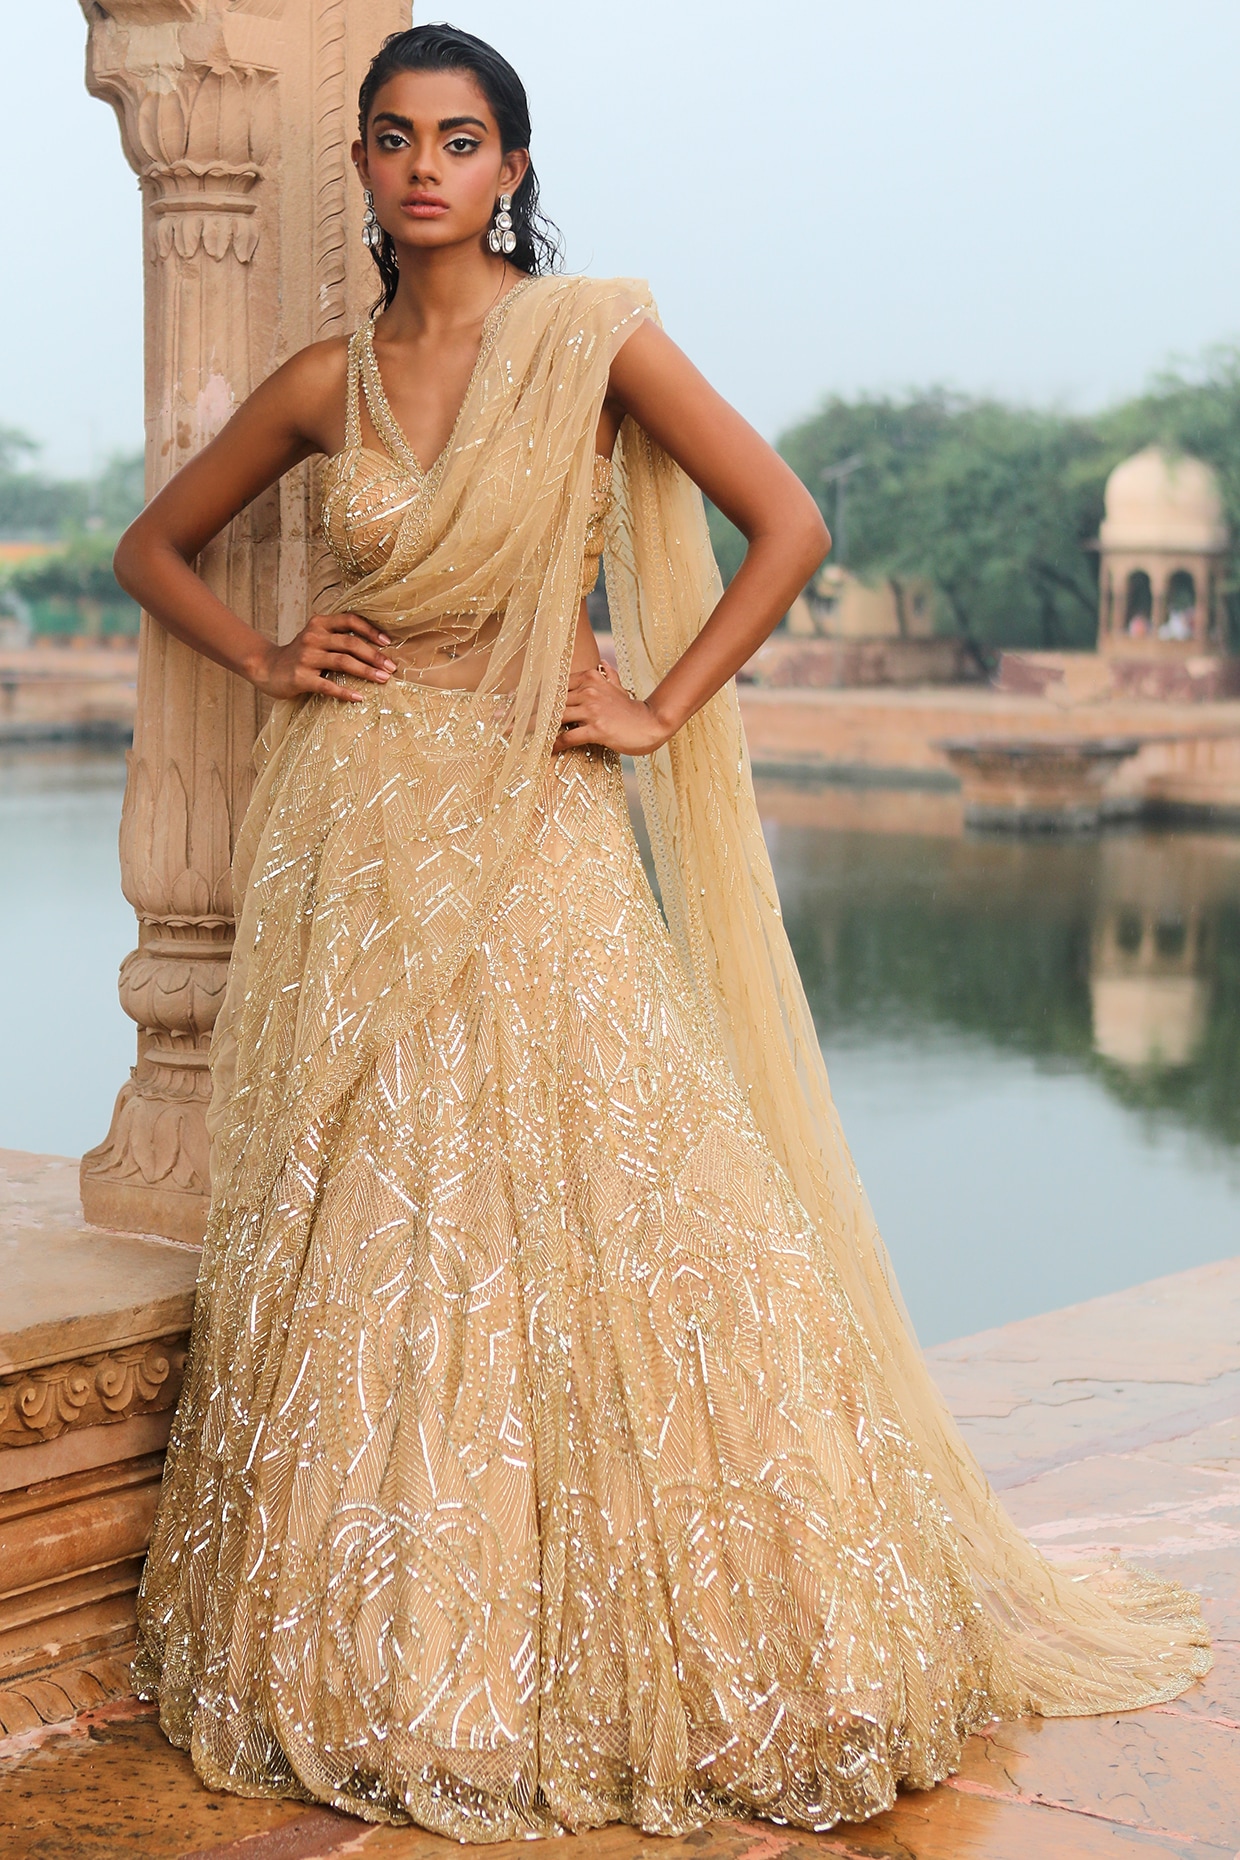 Dia Nicolas in Gold Lehenga Saree | Bride reception dresses, Lehenga saree,  Saree gown